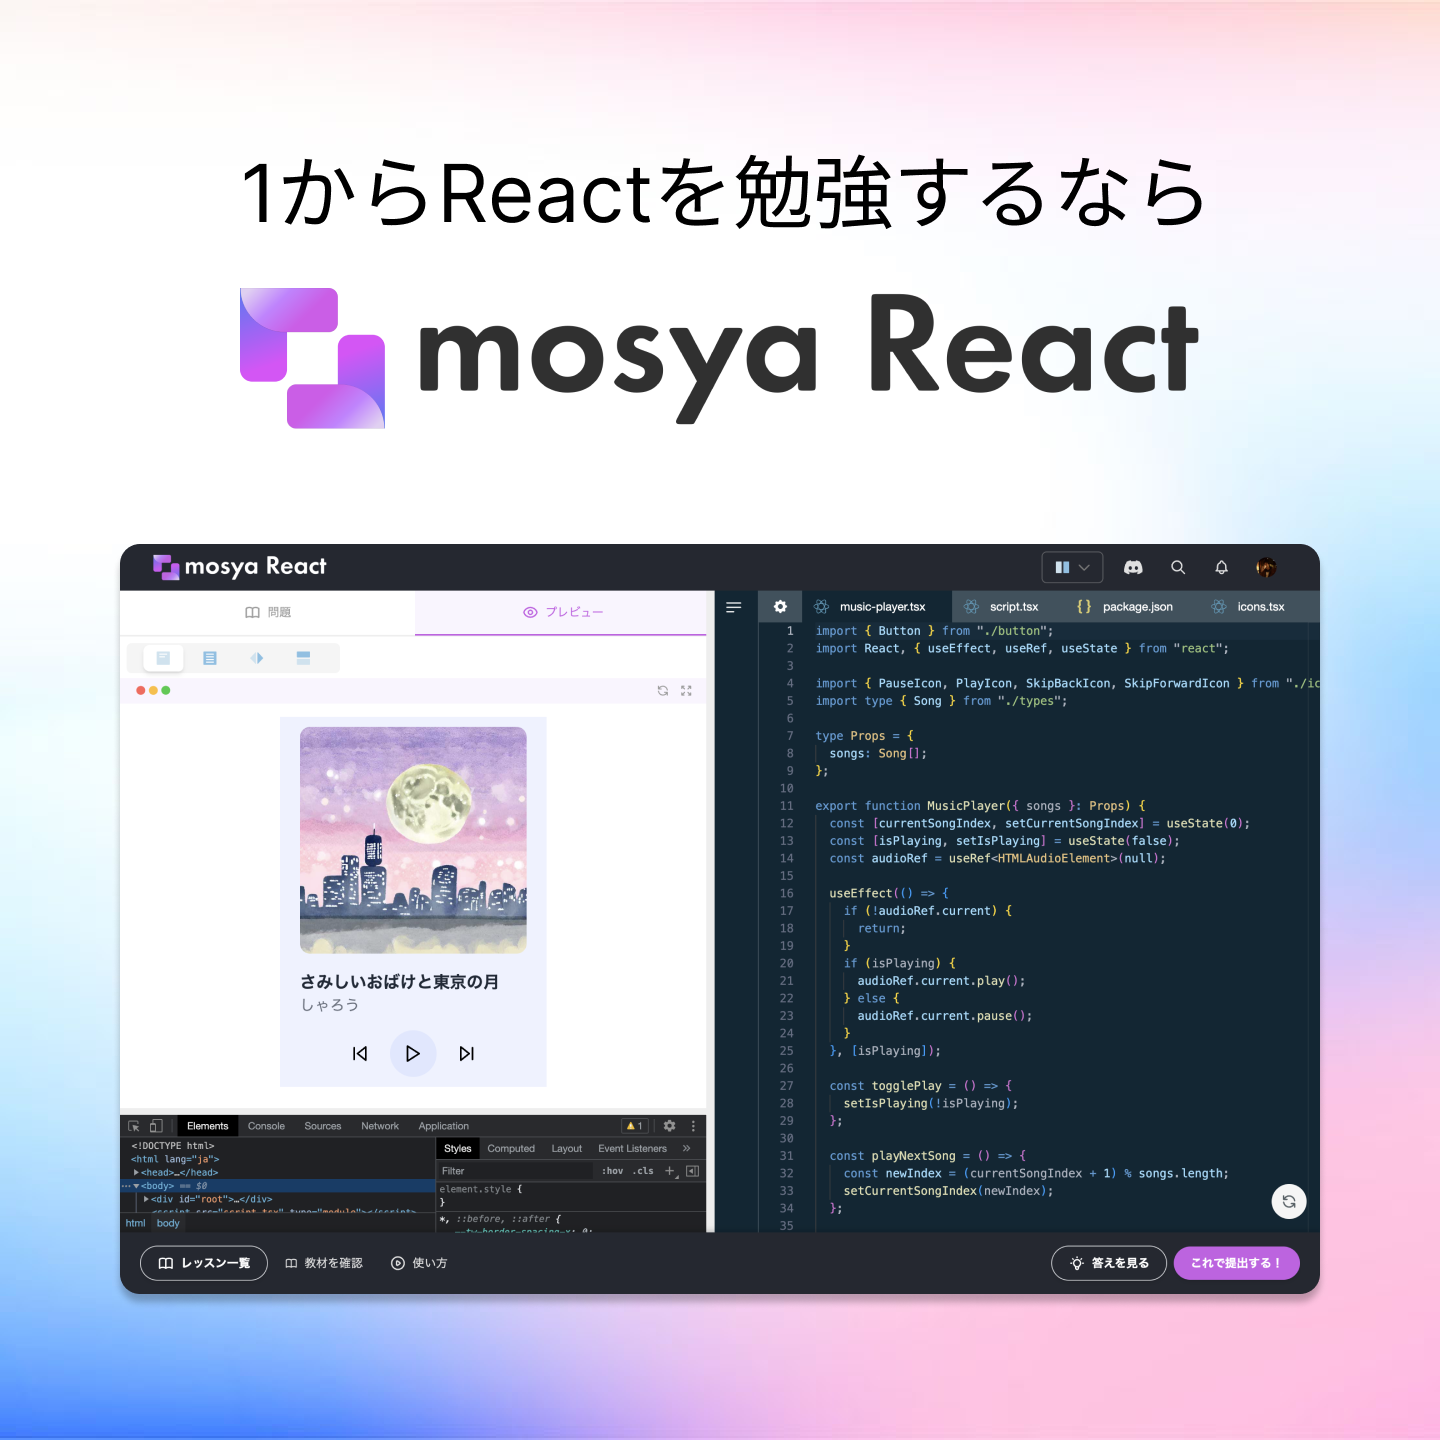 mosya Reactで学習を始めたい方はこちらをクリック